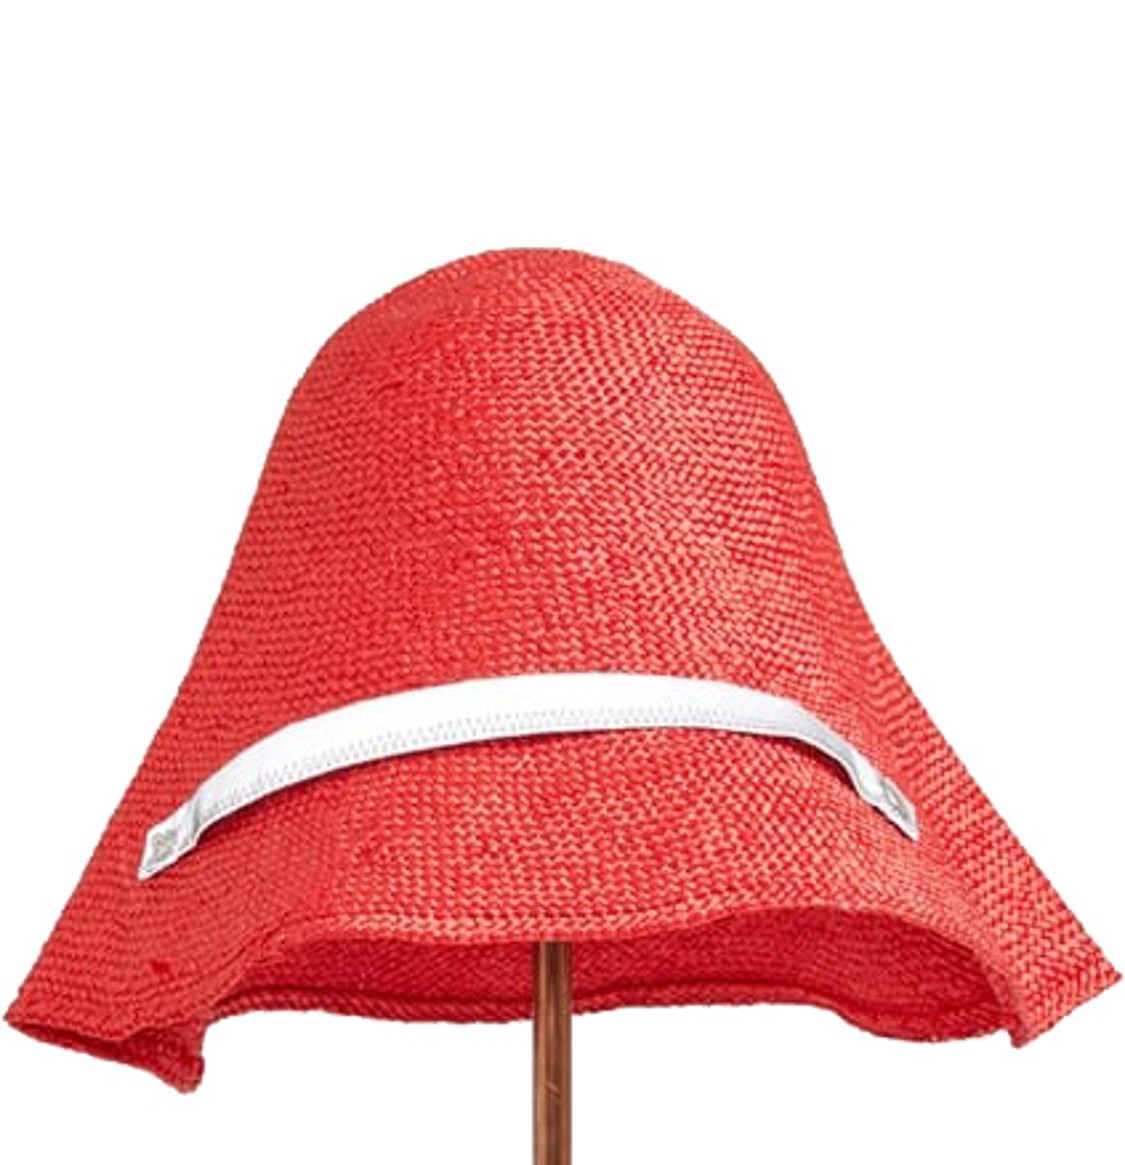 shop Flapper  Accessori: Cappello Flapper, in paglia, modello Rita, in colore rosso, strap catarifrangente, richiudibile, taglia unica.

Composizione: 100% viscosa.
Dimensioni: A 27 x L 45 x P 34 cm. number 1483